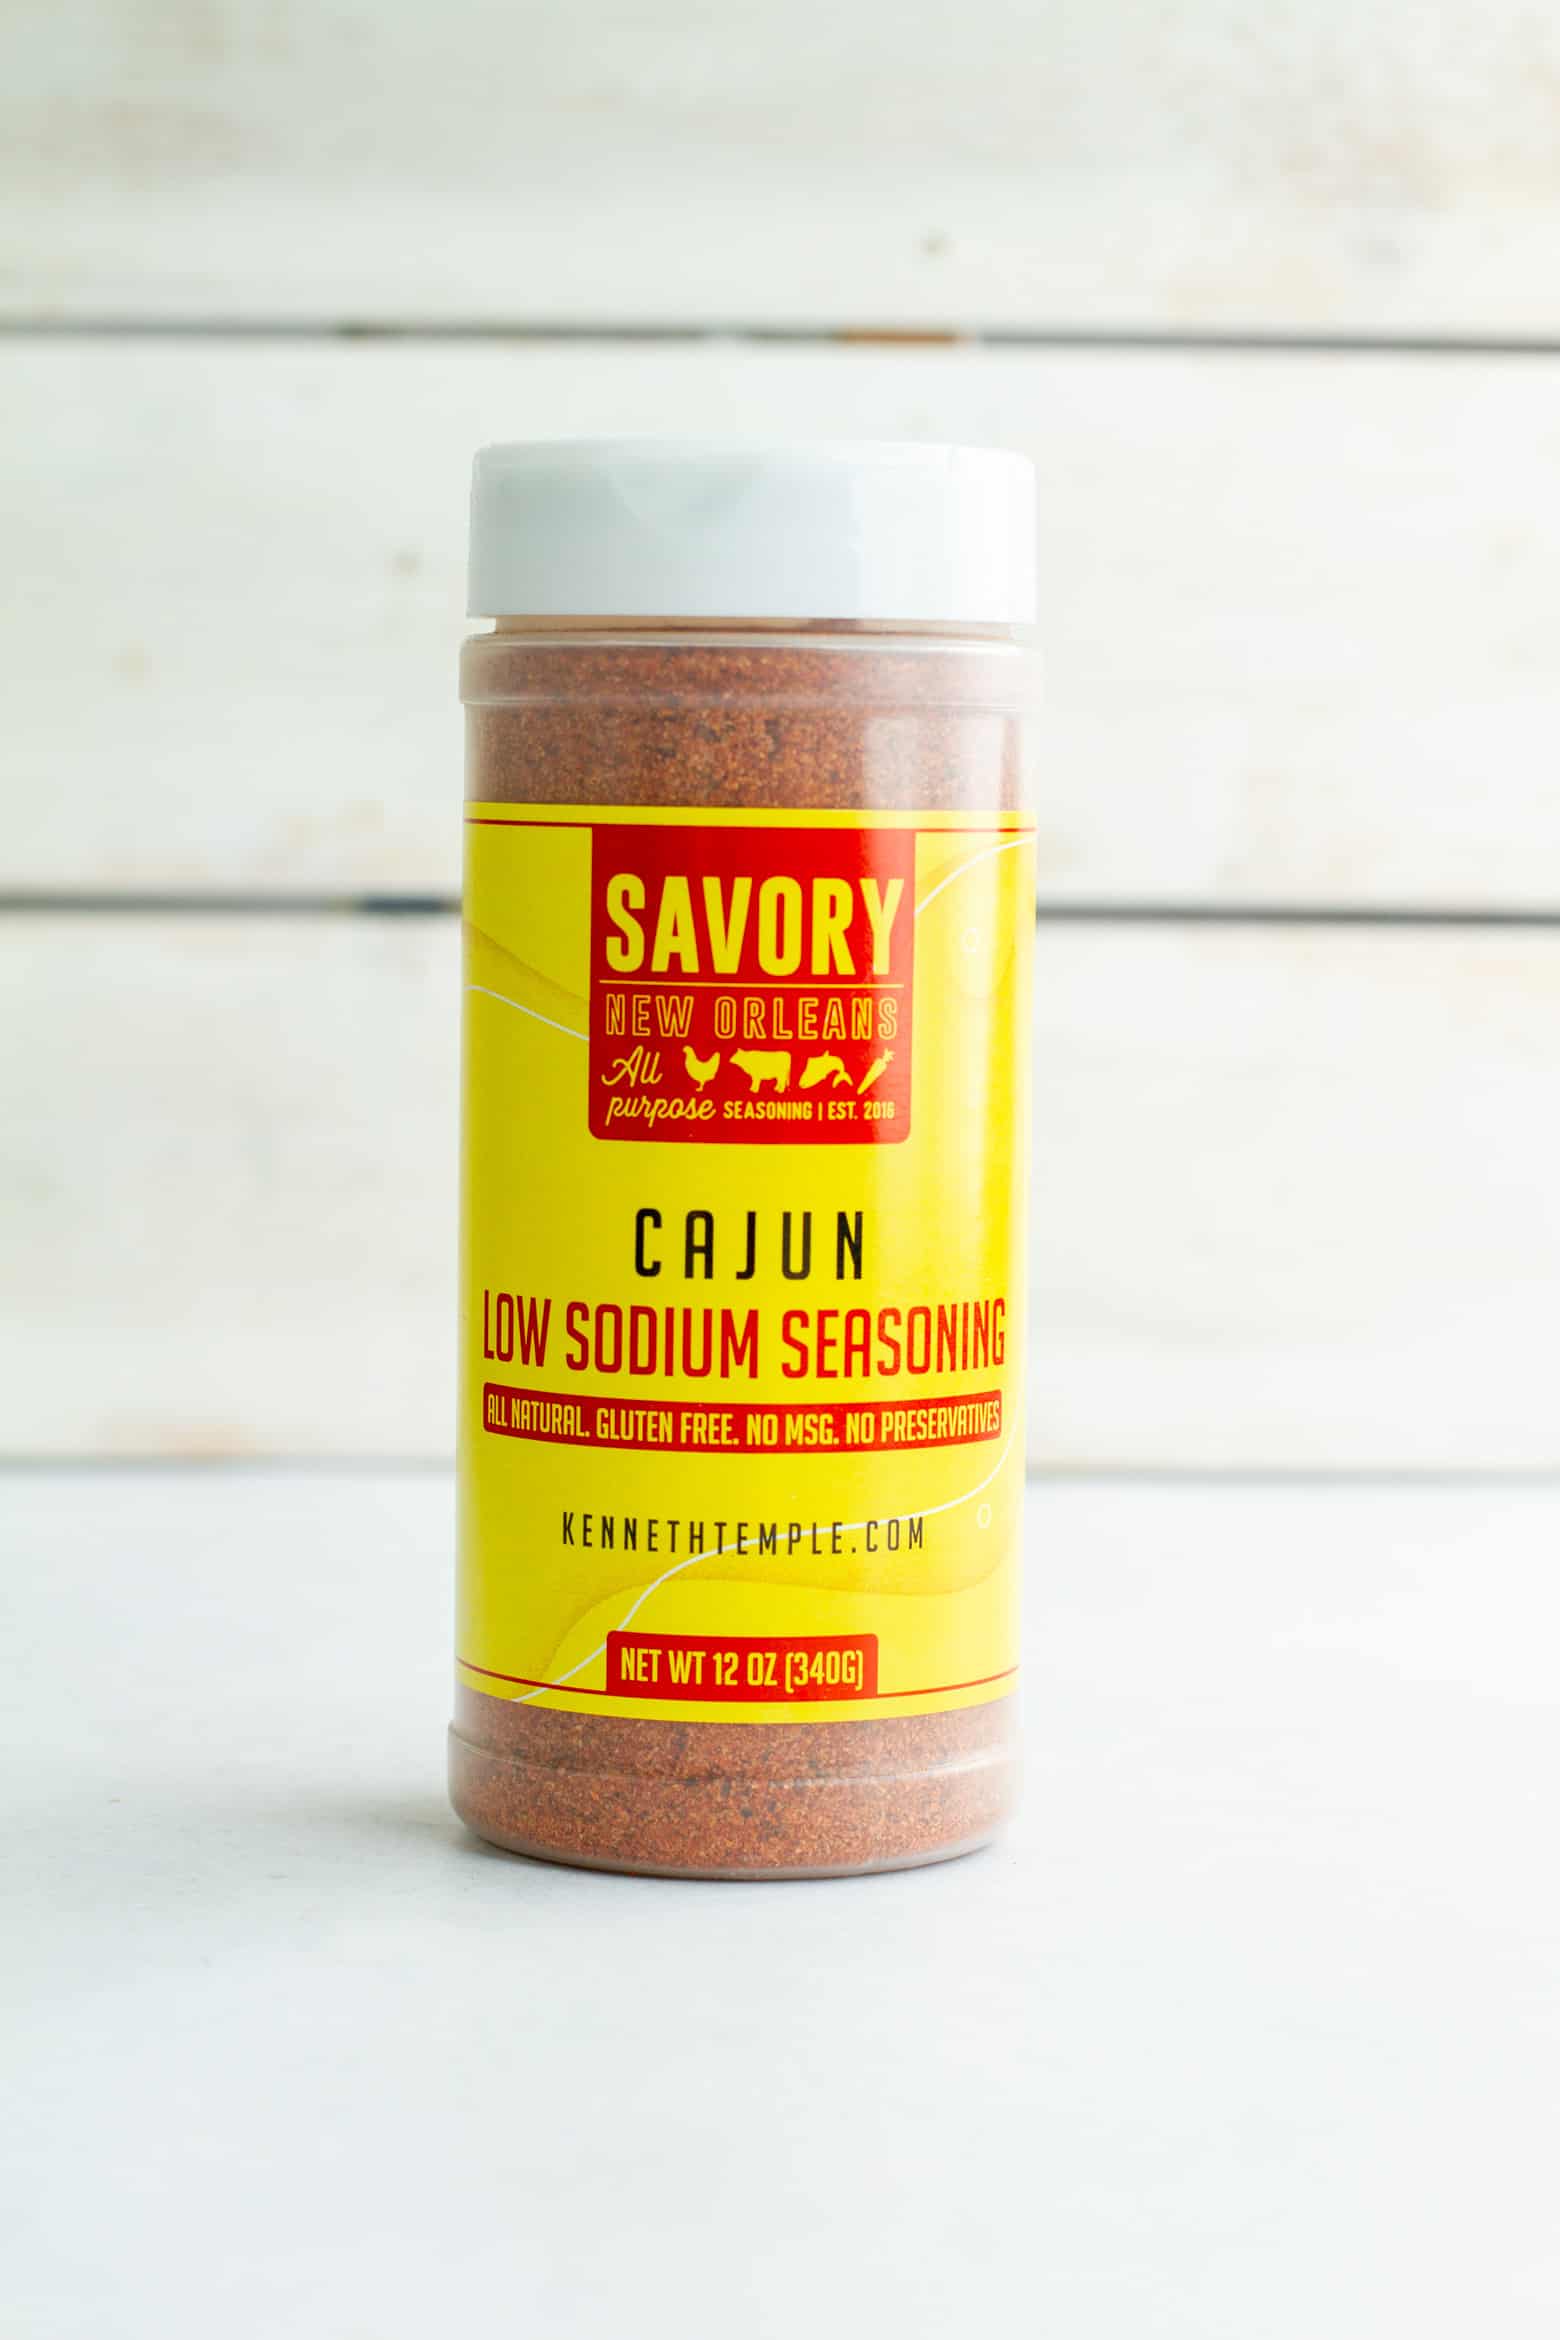 Creole and Cajun Spice Mix • Curious Cuisiniere